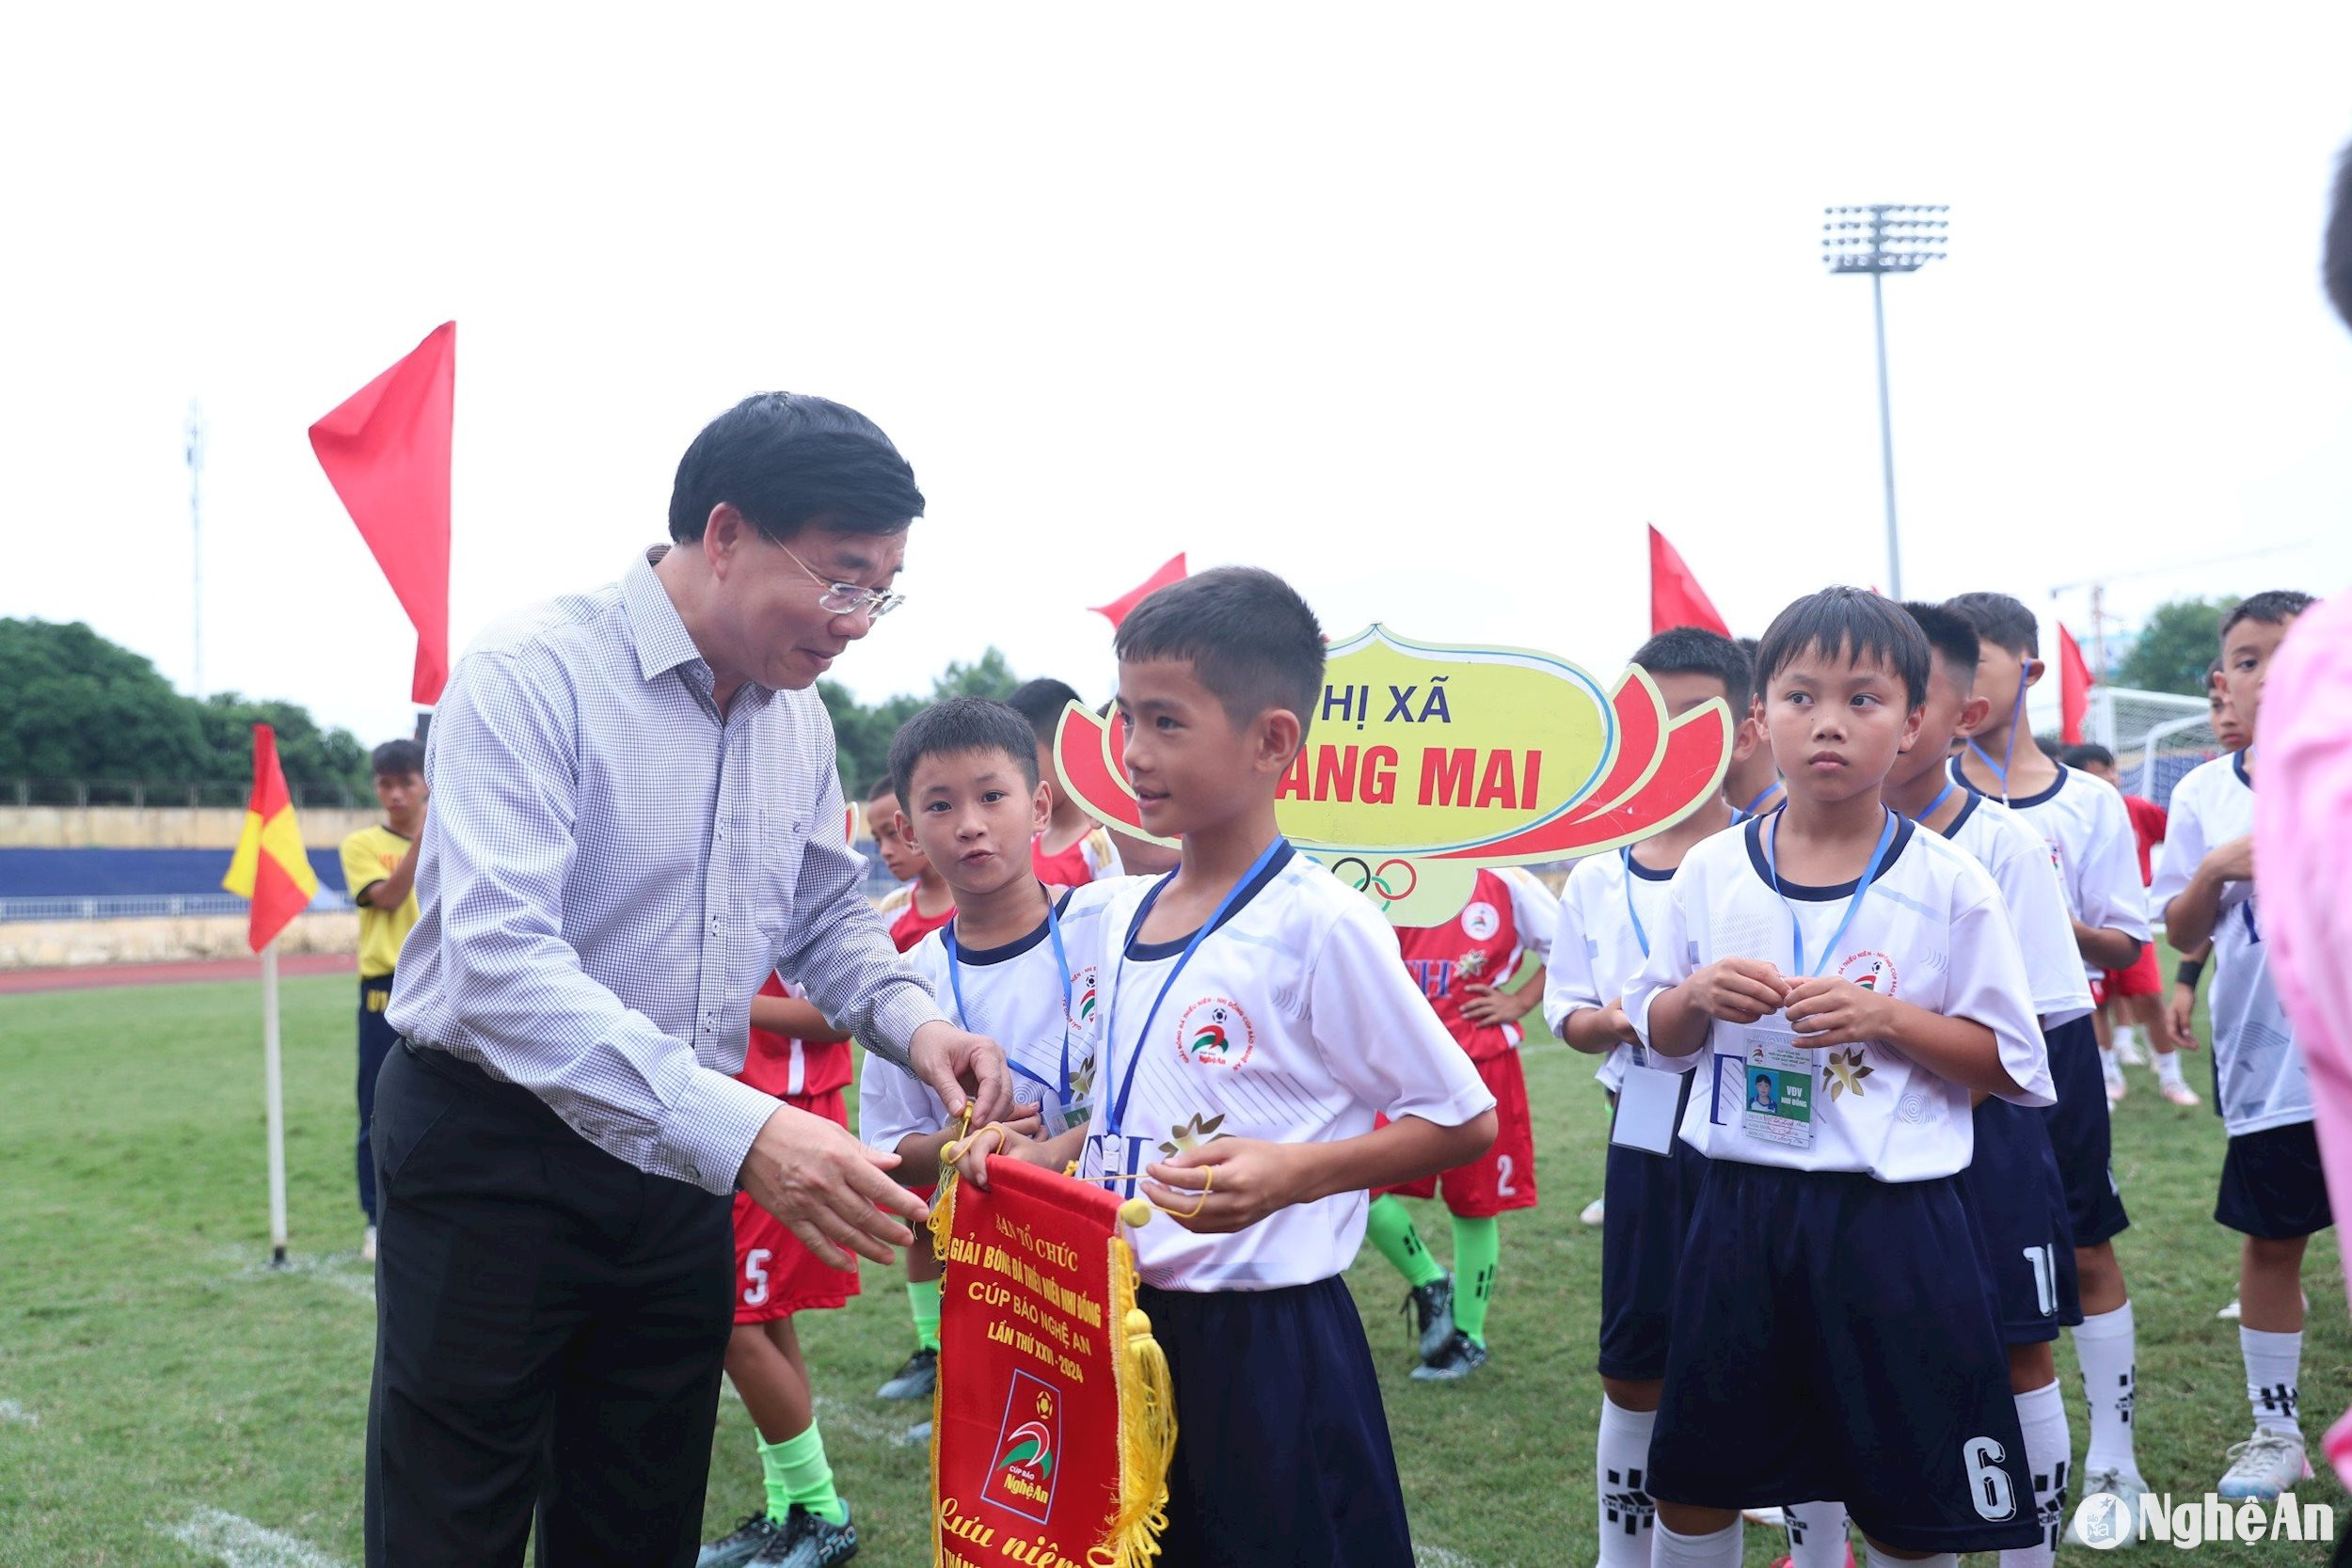 Đồng chí Nguyễn Văn Thông - Phó Bí thư Thường trực Tỉnh uỷ tặng Cờ lưu niệm cho các đội bóng dự giải. Ảnh: Đức Anh